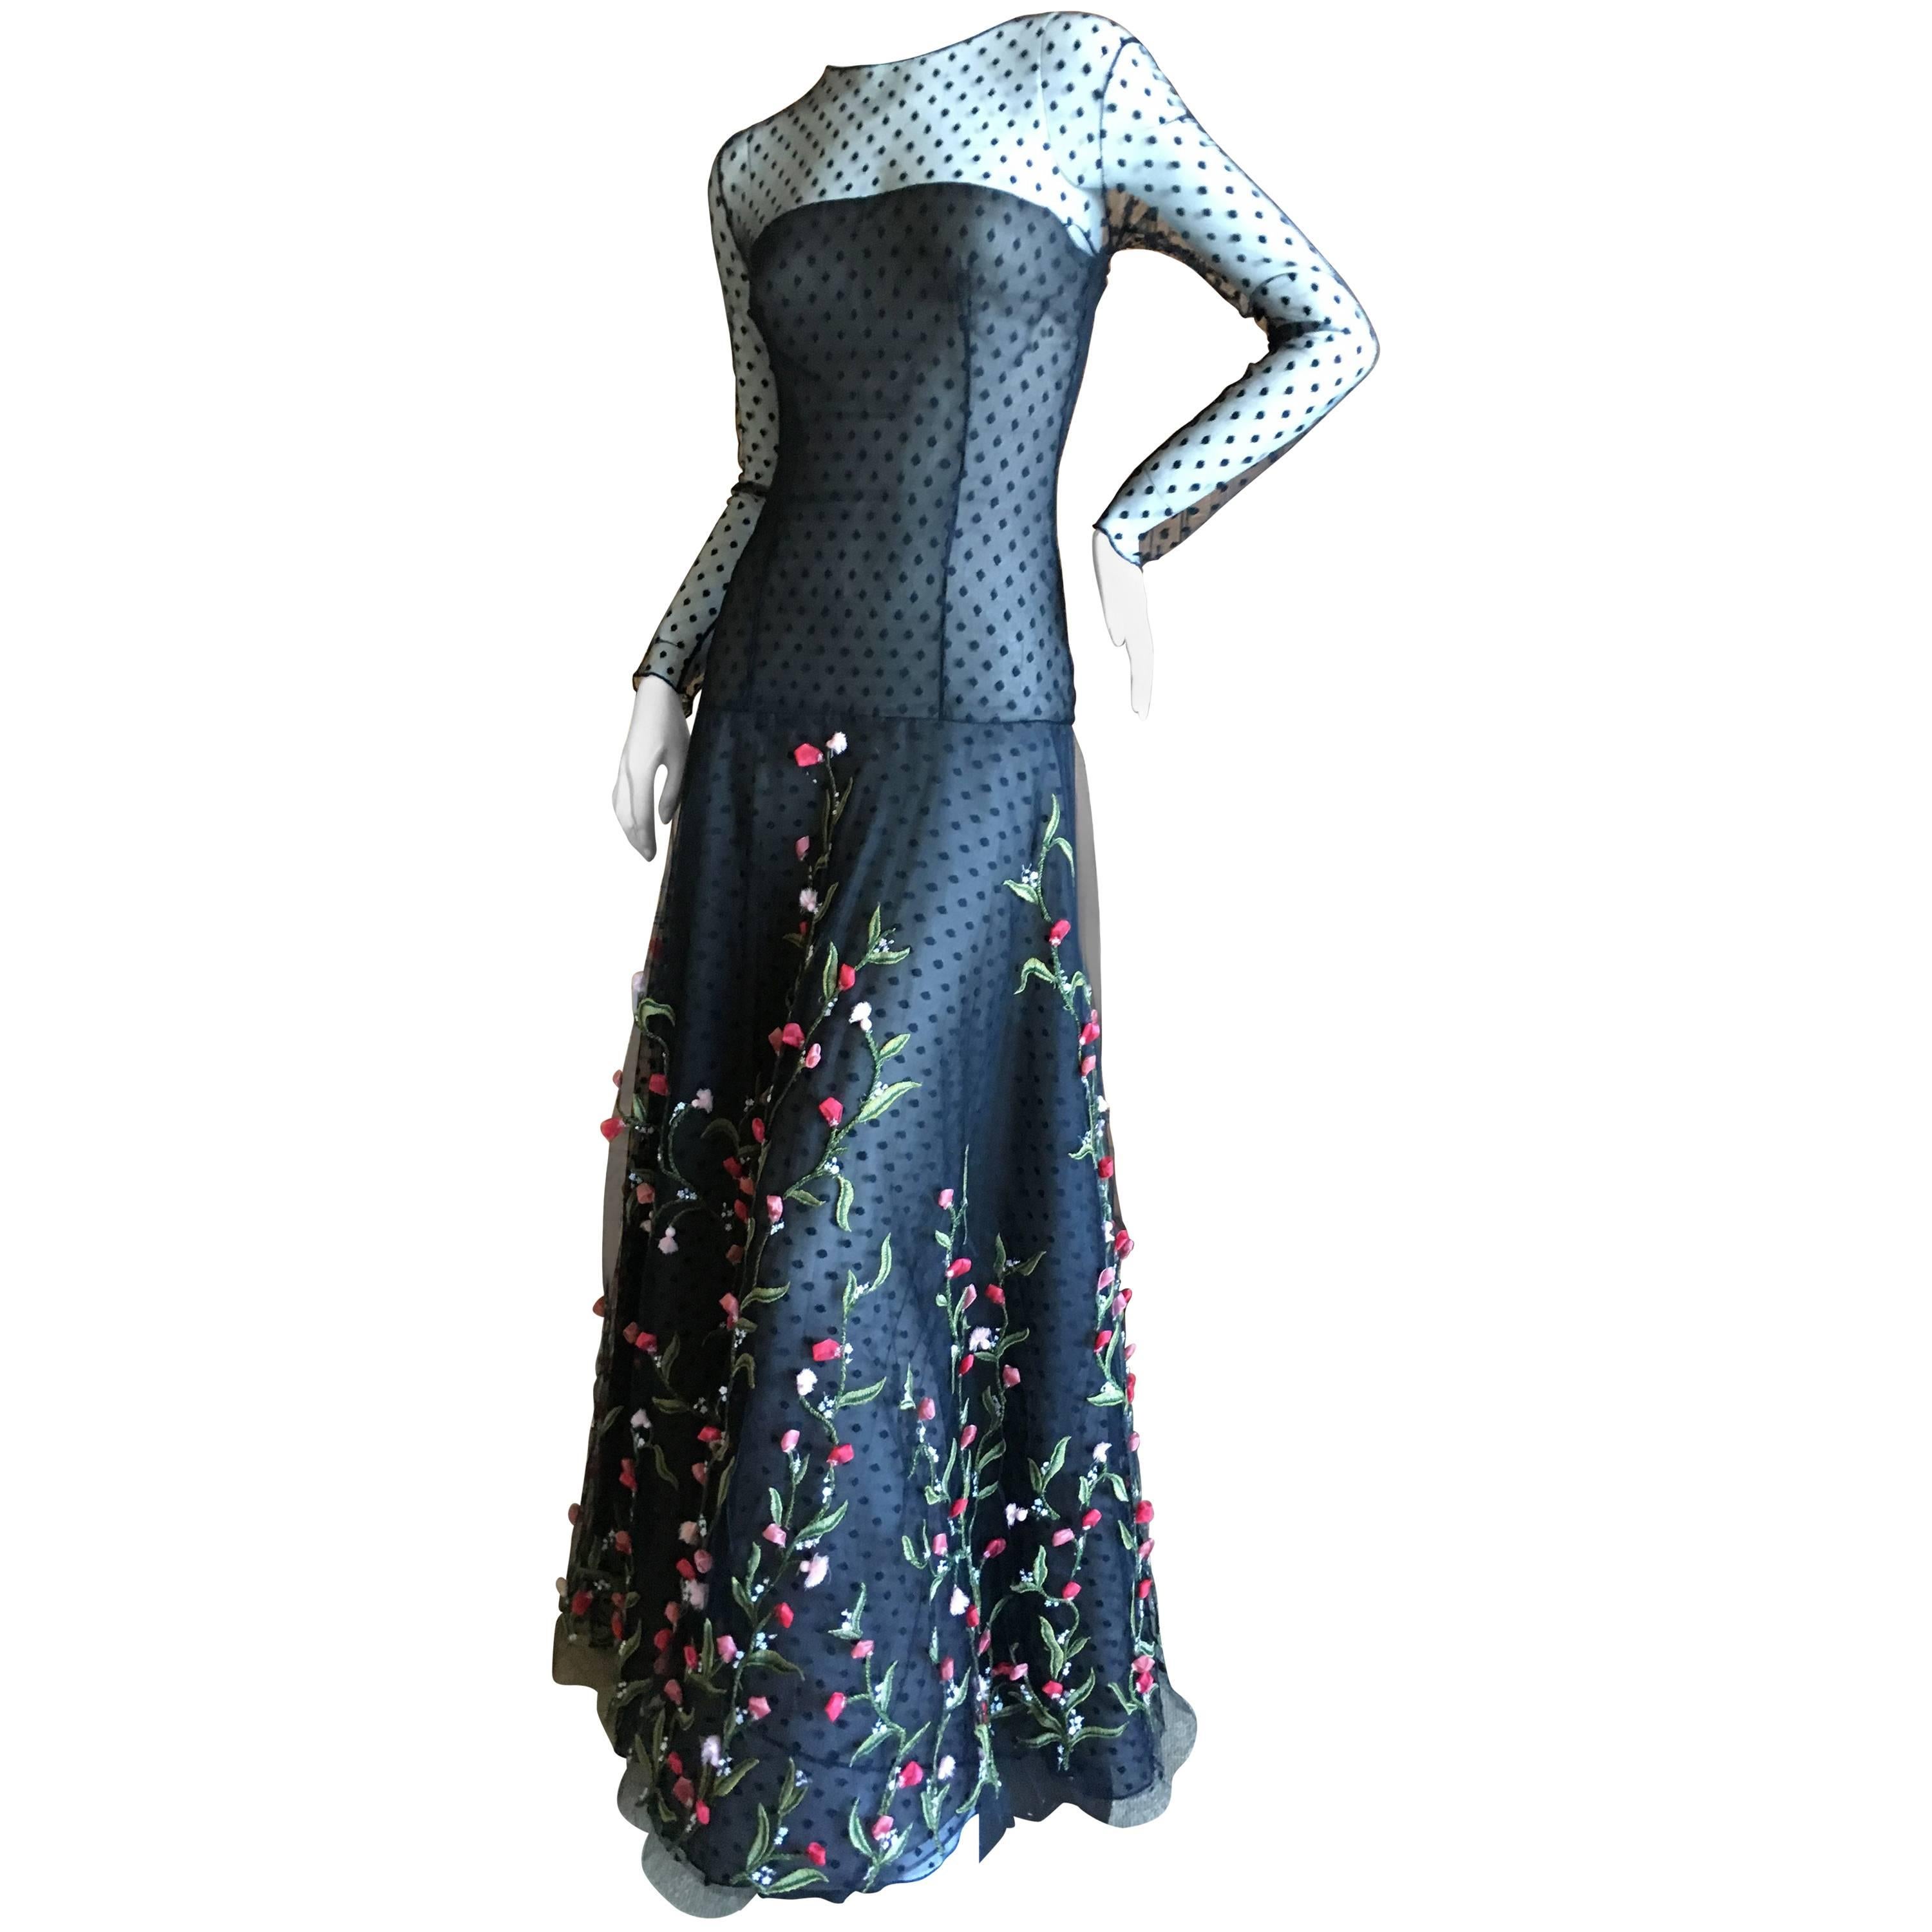 Oscar de la Renta Romantic Rose Floral Embellished Sheer Lace Evening Dress 